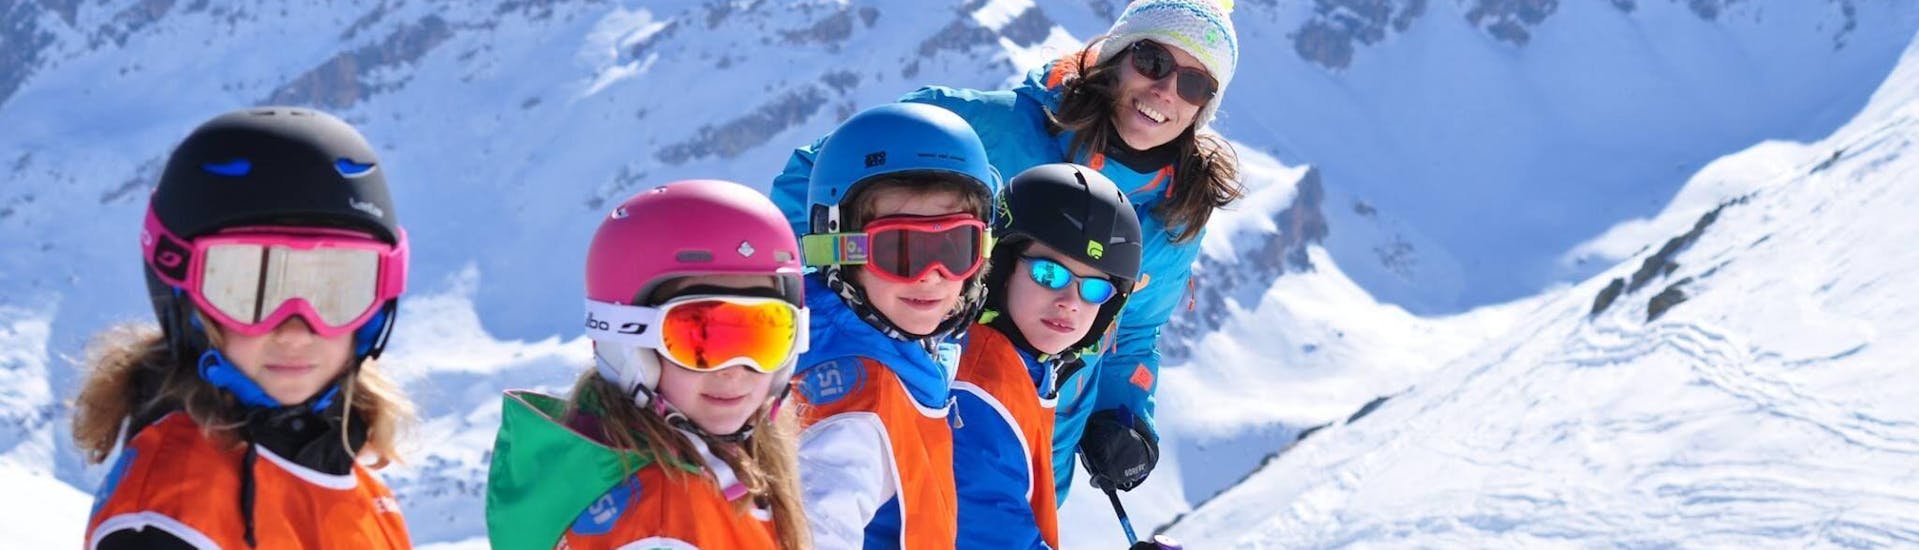 Cours de ski pour Enfants (4-12 ans).